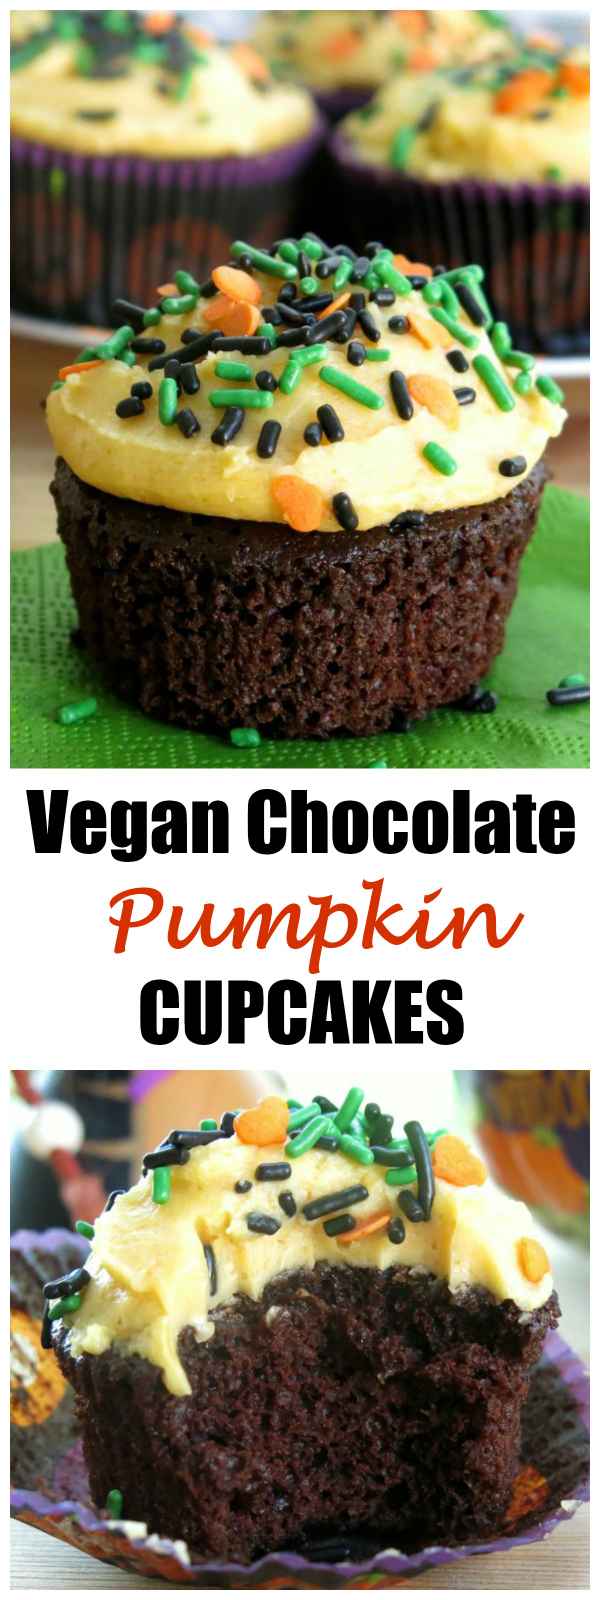 Vegan Chocolate Pumpkin Cupcakes